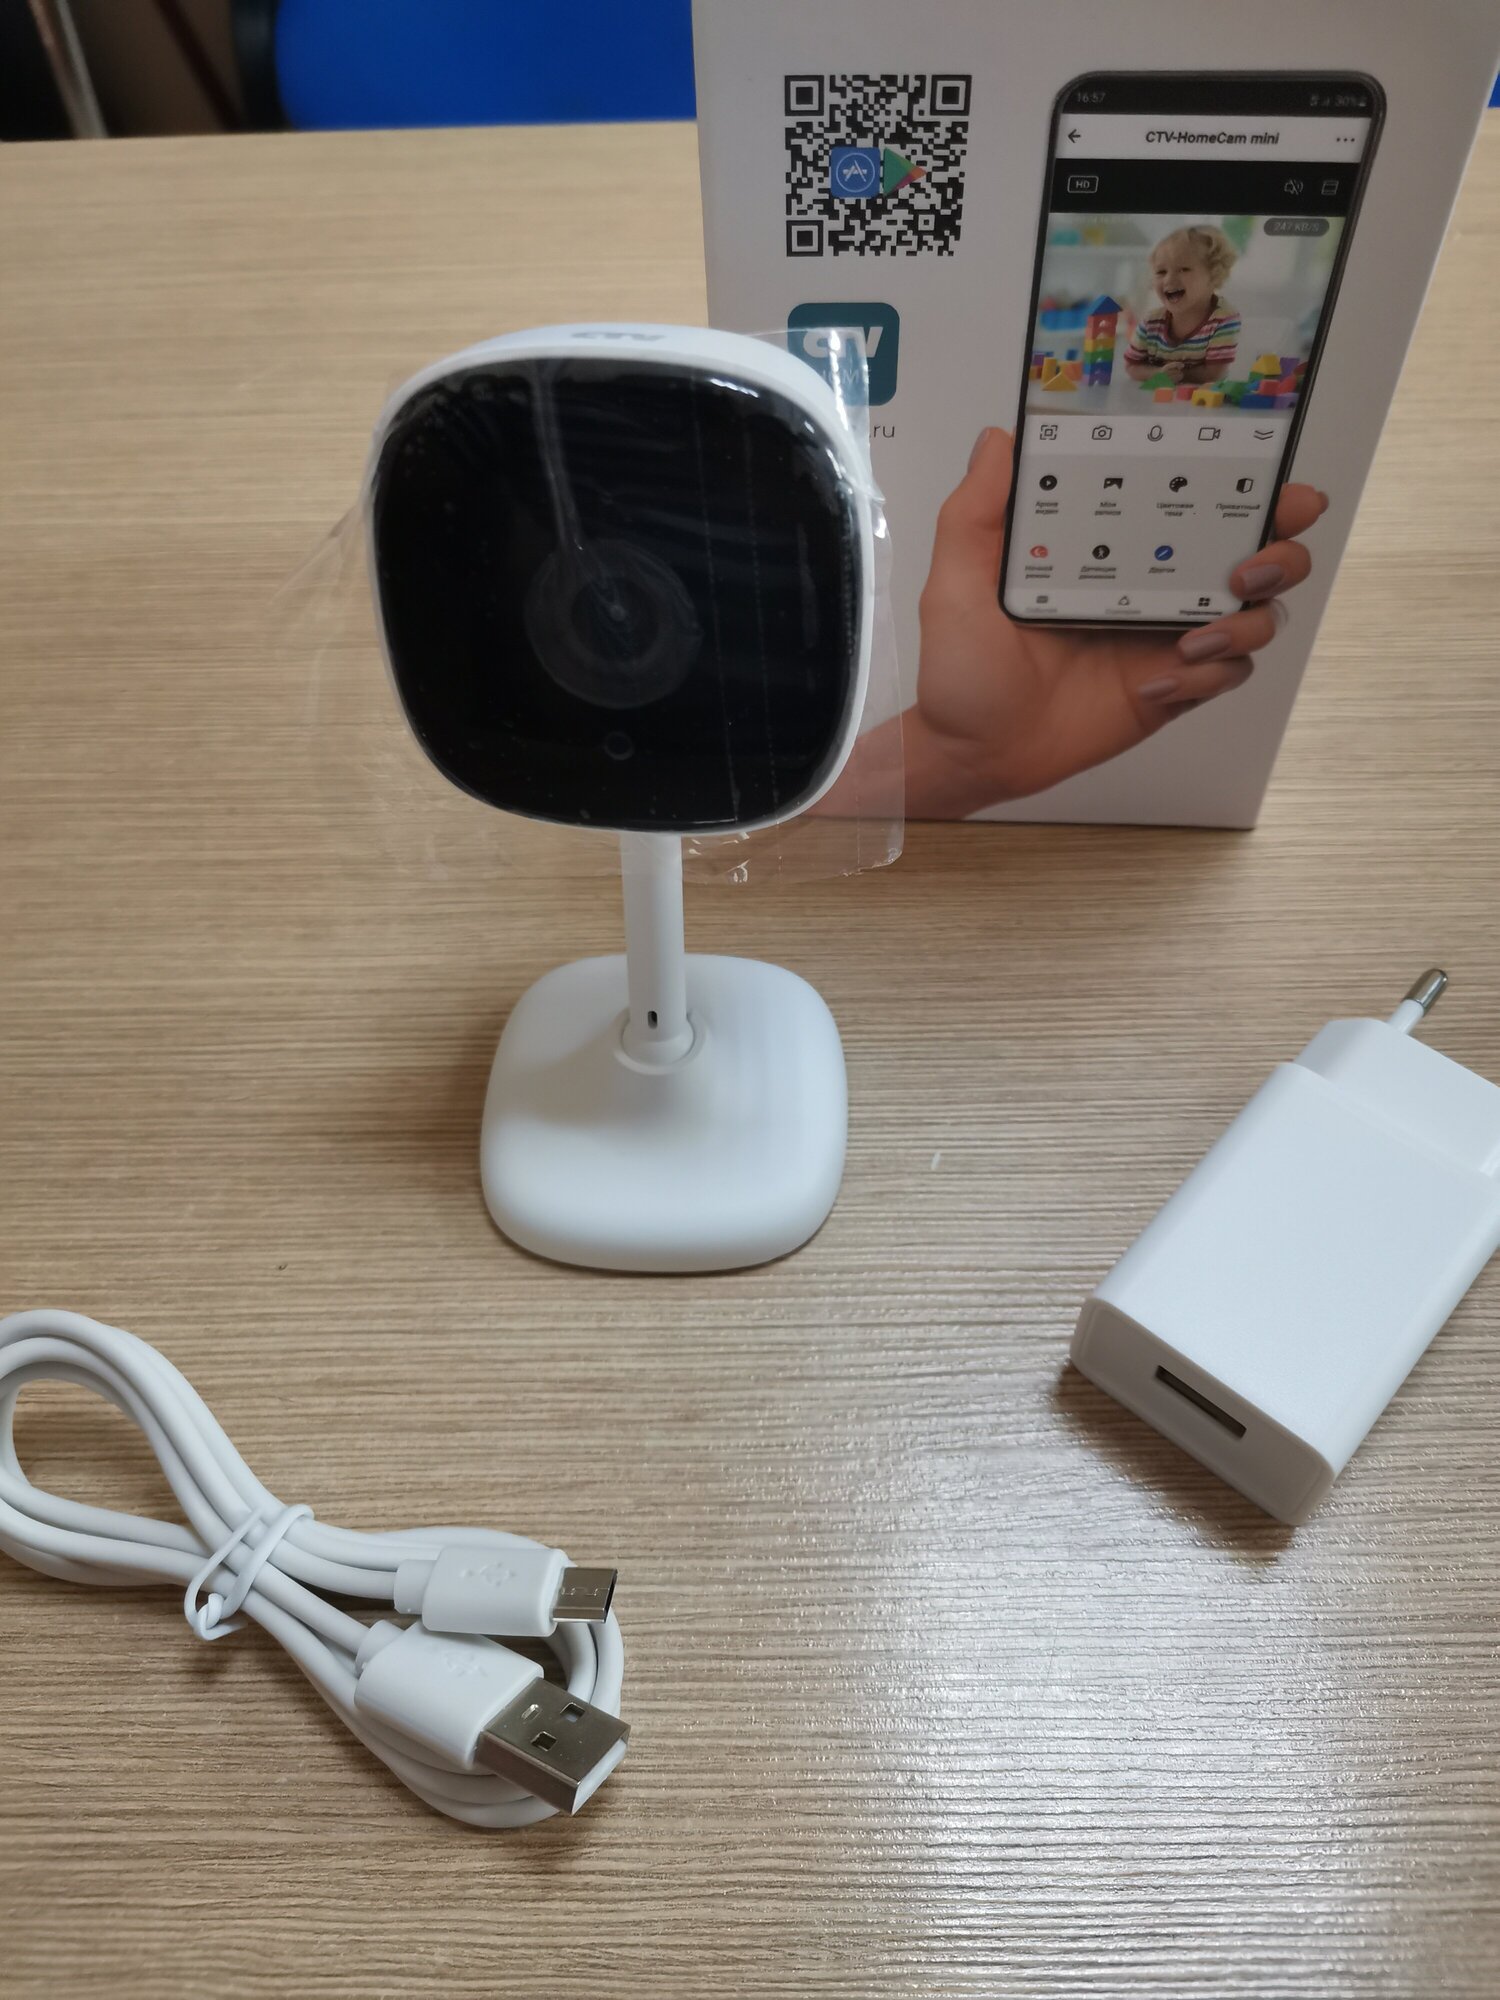 CTV-HomeCam mini Wi-Fi видеокамера с разрешением Full HD для квартиры, дома, видеоняня - фотография № 6